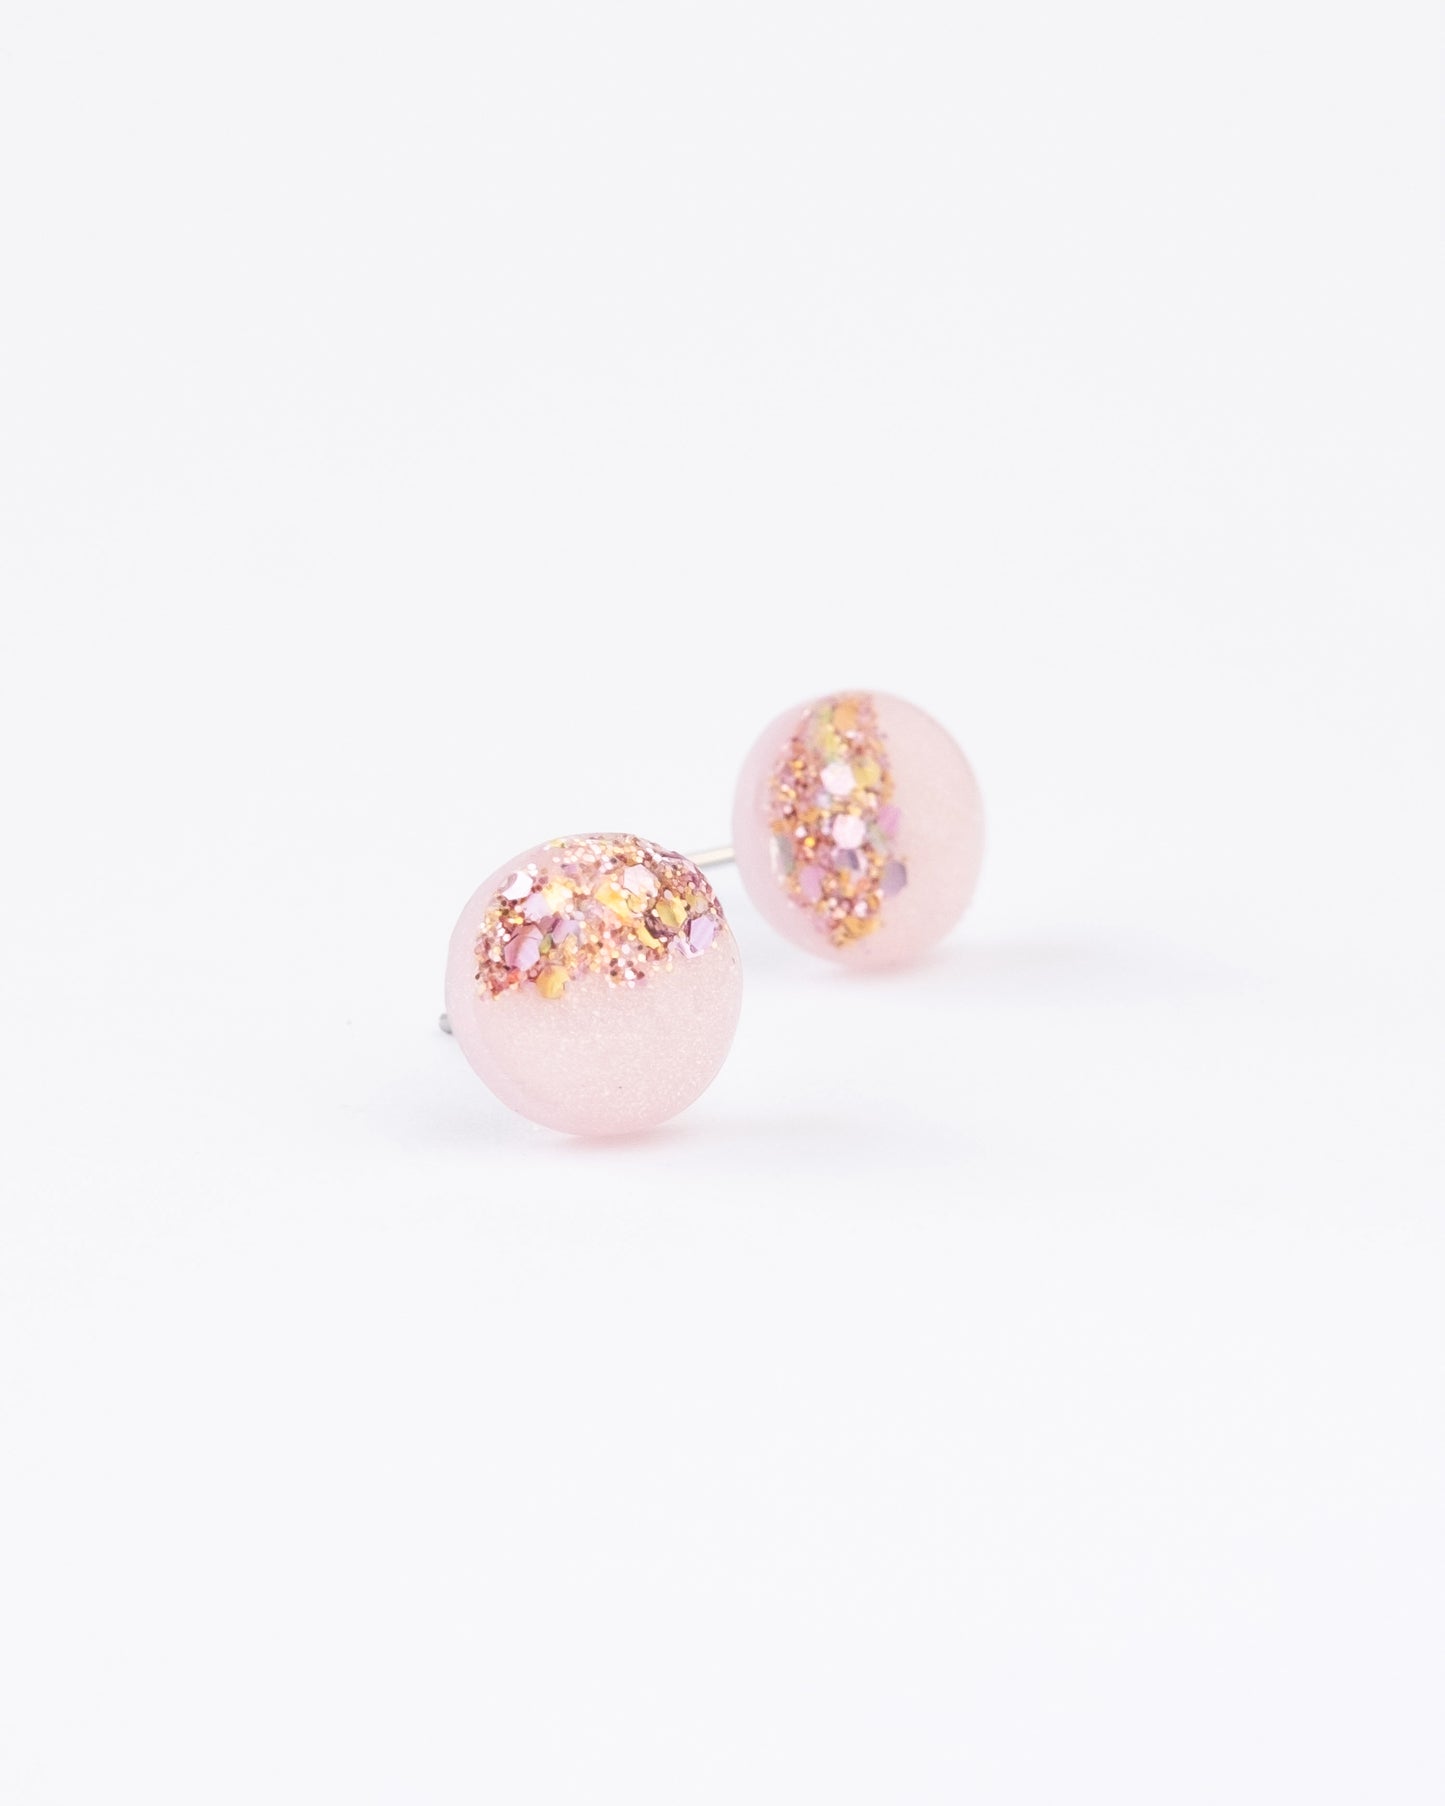 Rose pink glitter stud earrings freeshipping - Ollijewelry